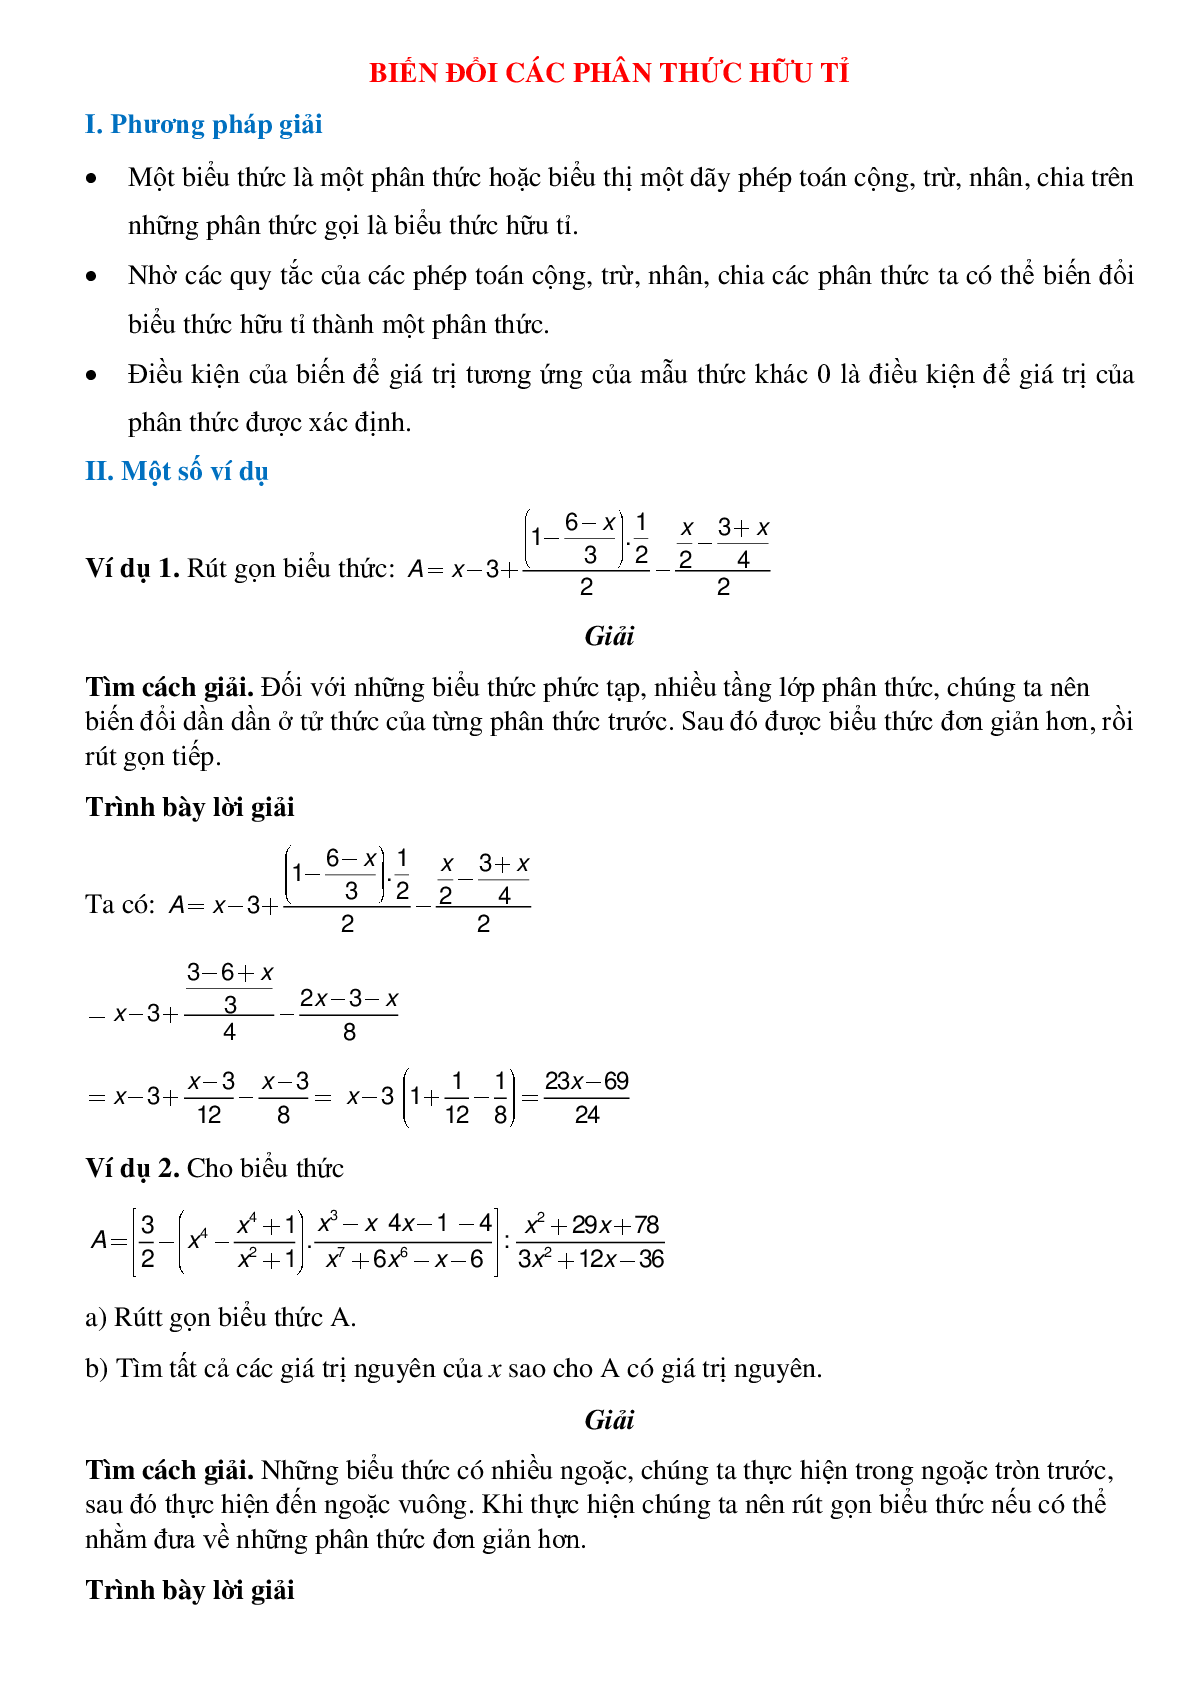 Biến đổi các phân thức hữu tỉ và cách giải bài tập (trang 1)